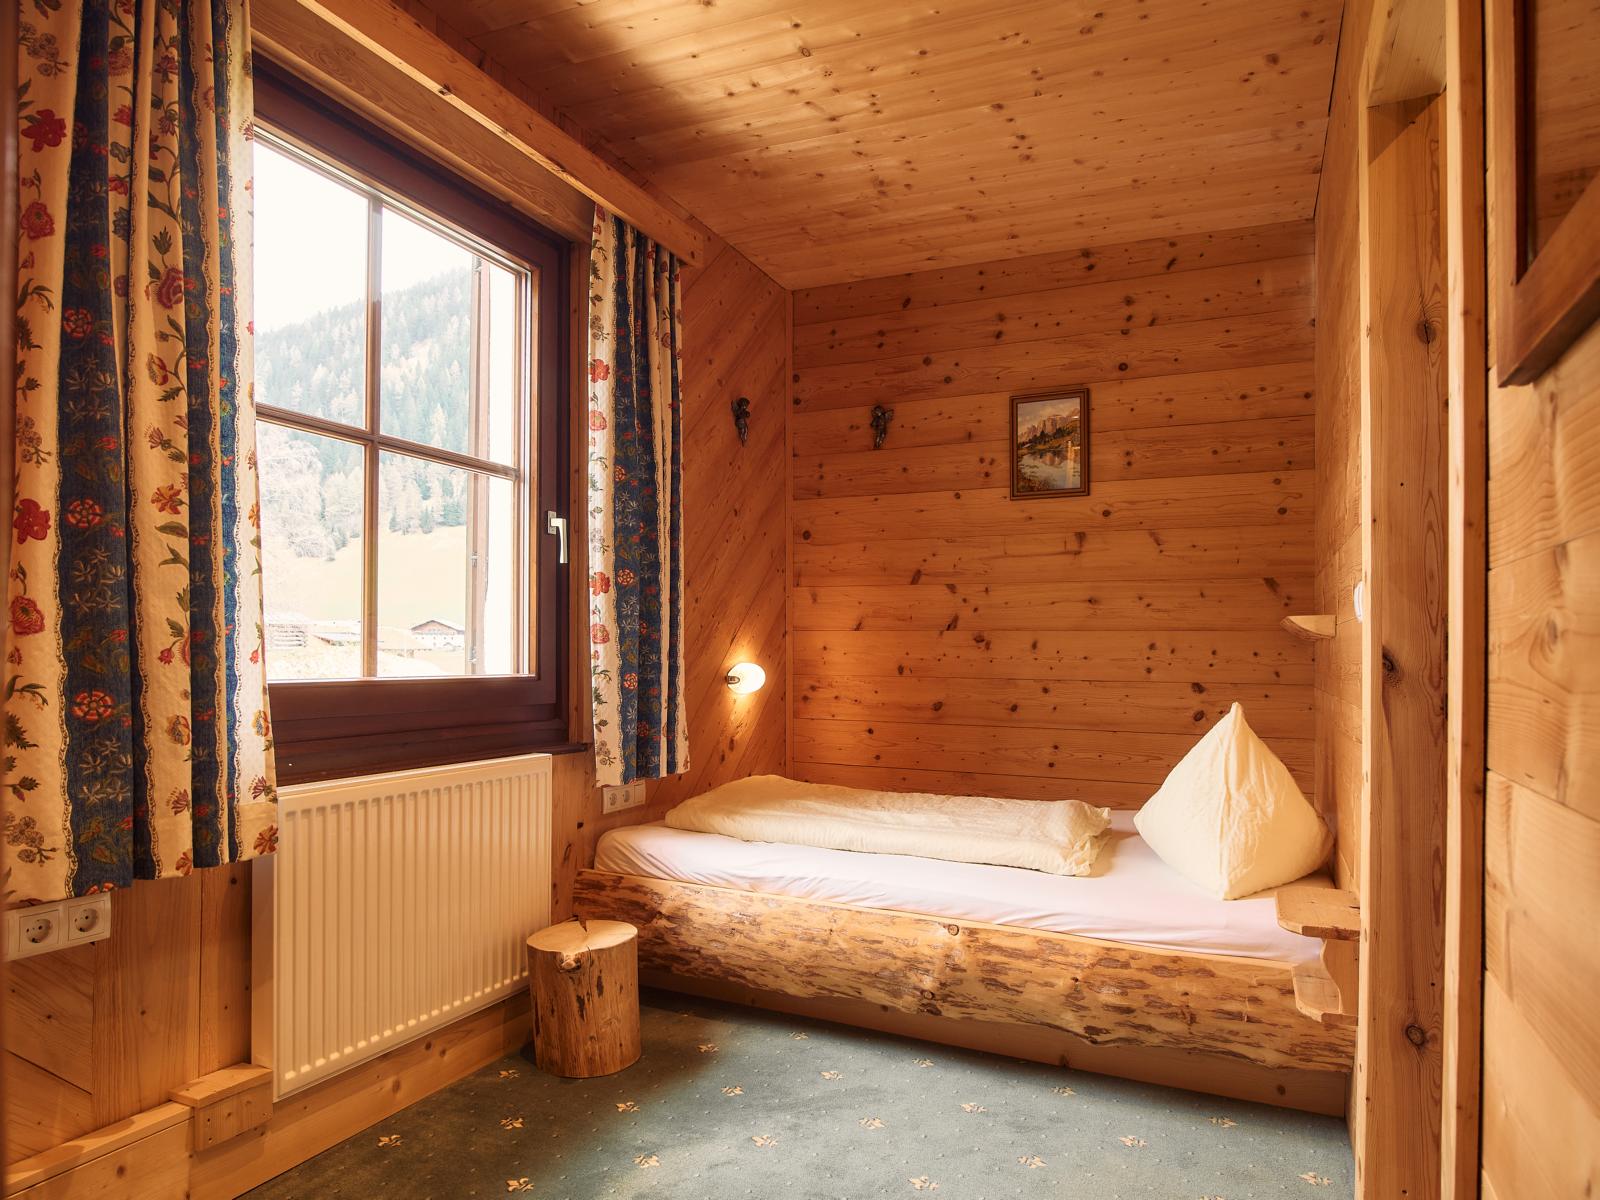 Gesunder Schlaf in der Schäfersuite im Almis Berghotel im Tiroler Wipptal